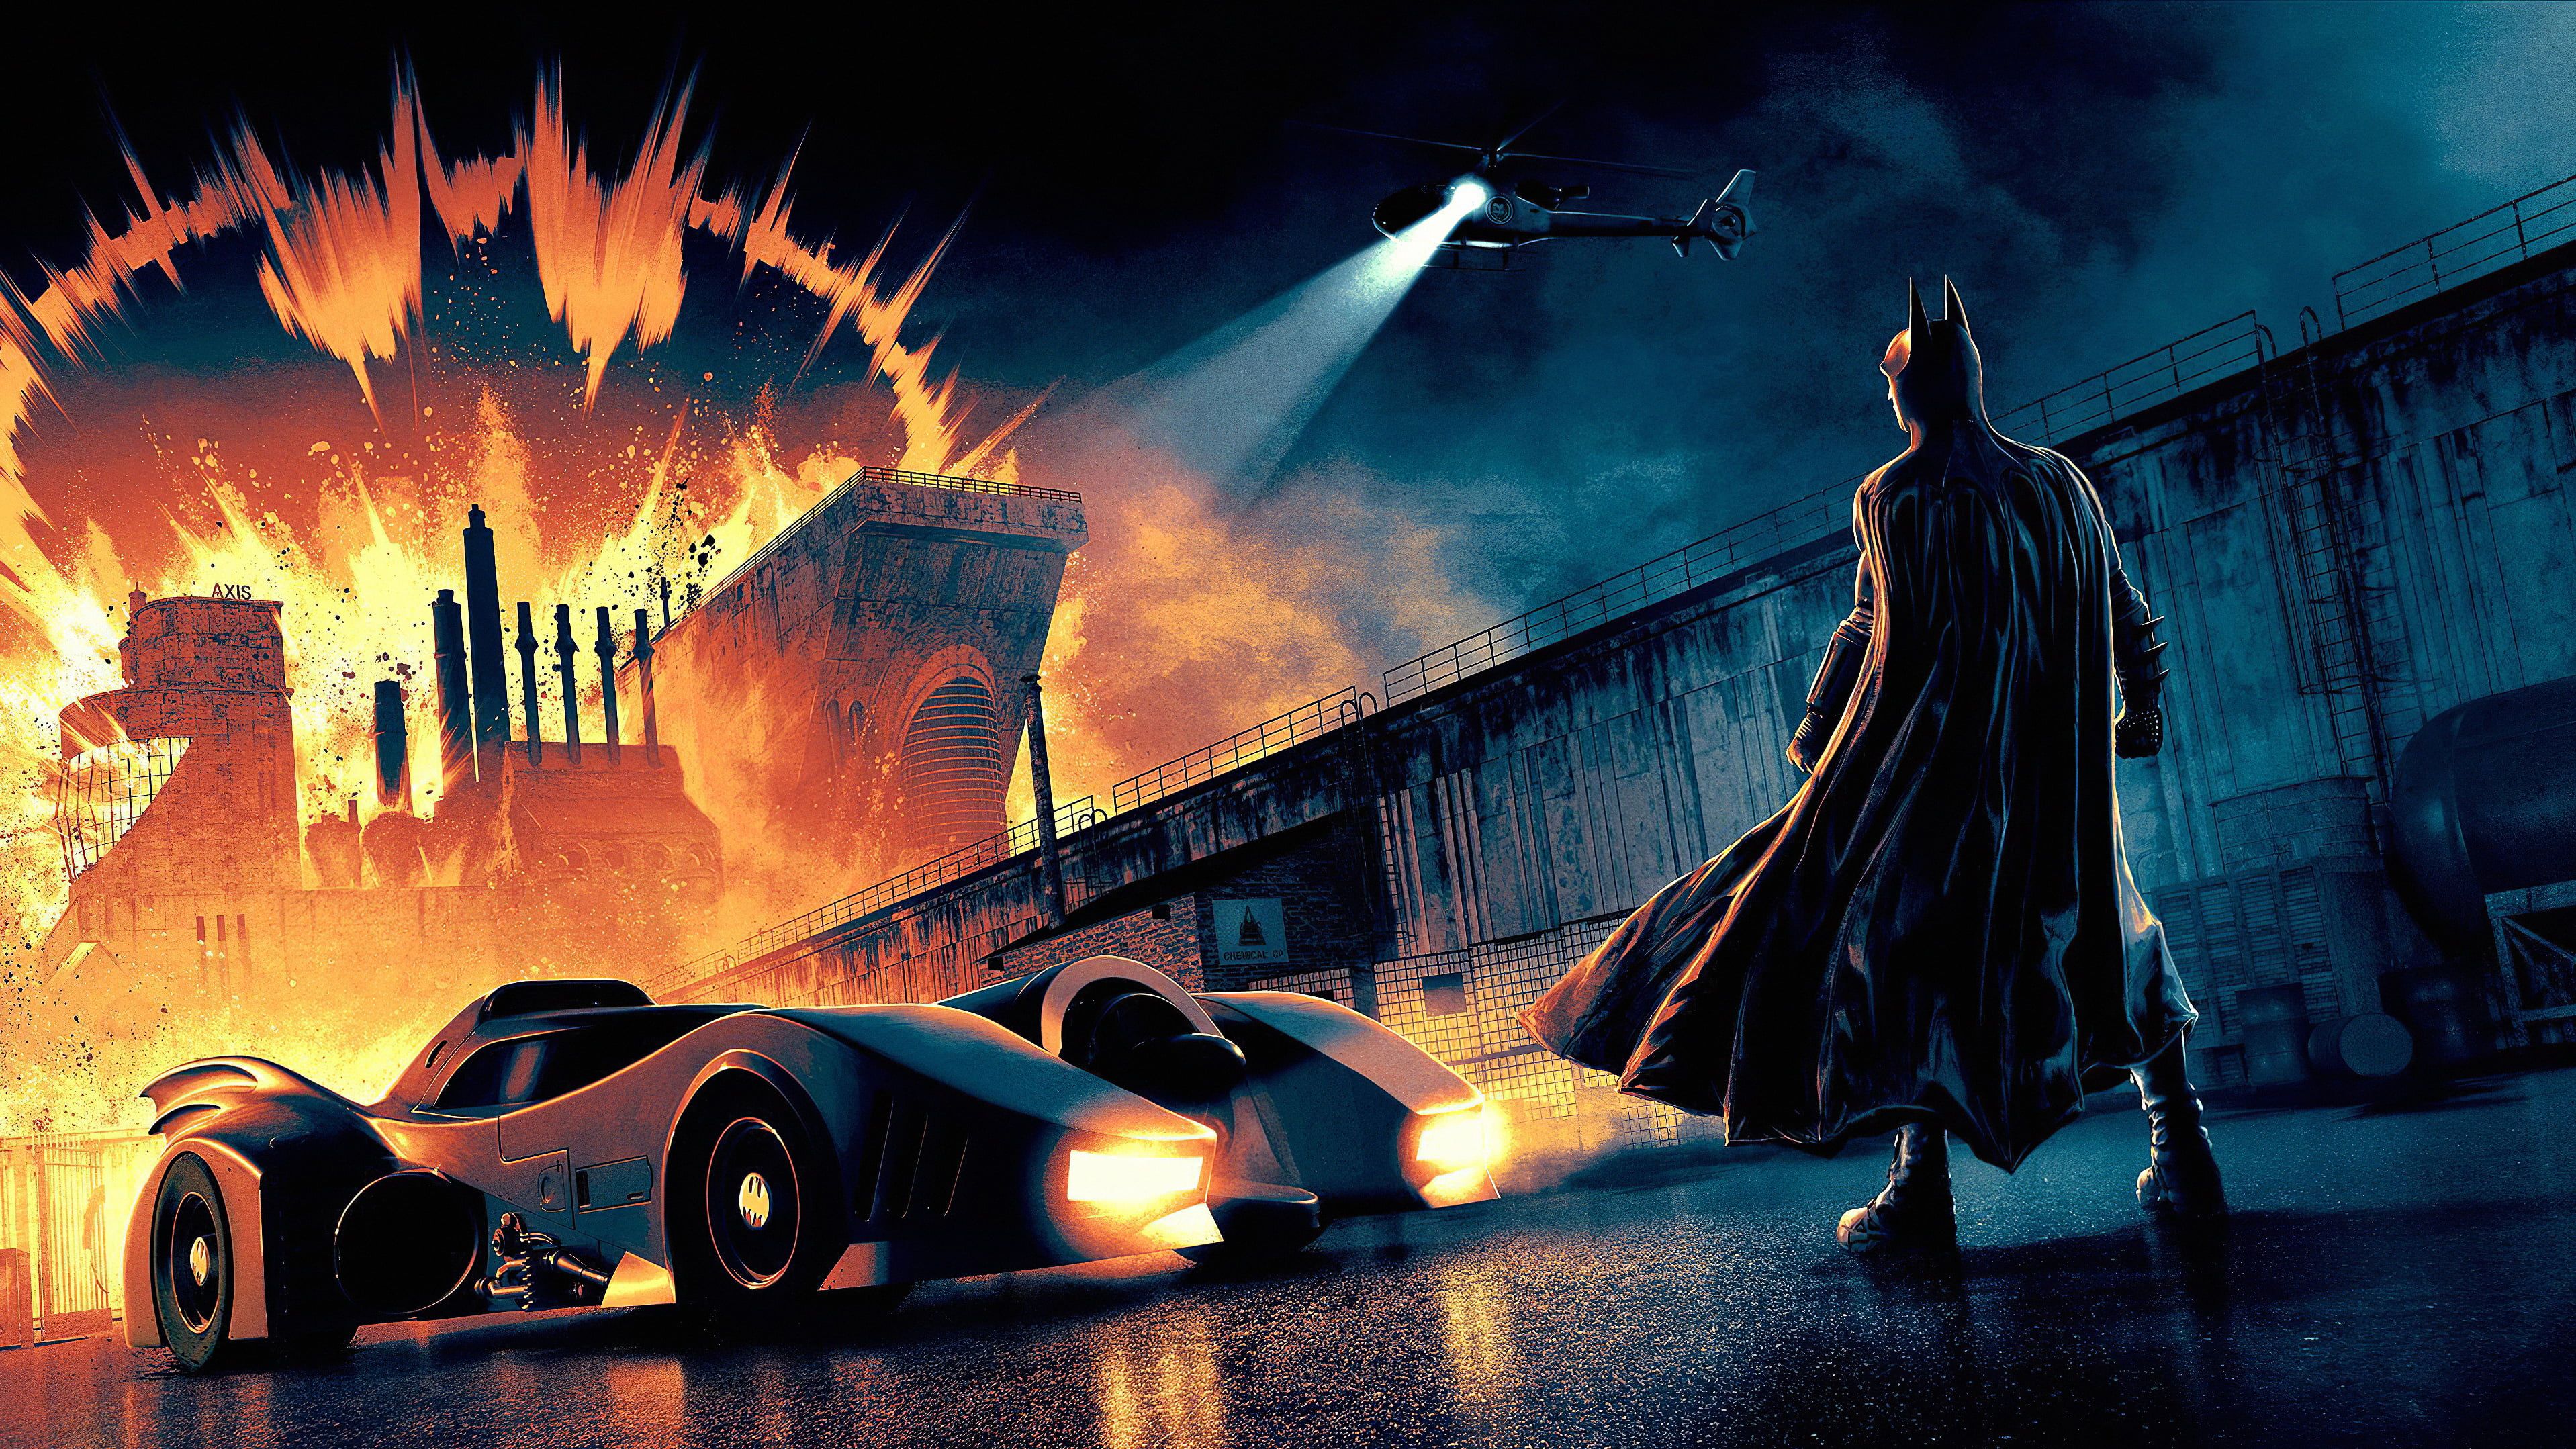 Batman #Batmobile DC Comics K #wallpaper #hdwallpaper #desktop. Dc comics wallpaper, Batmobile, Batman